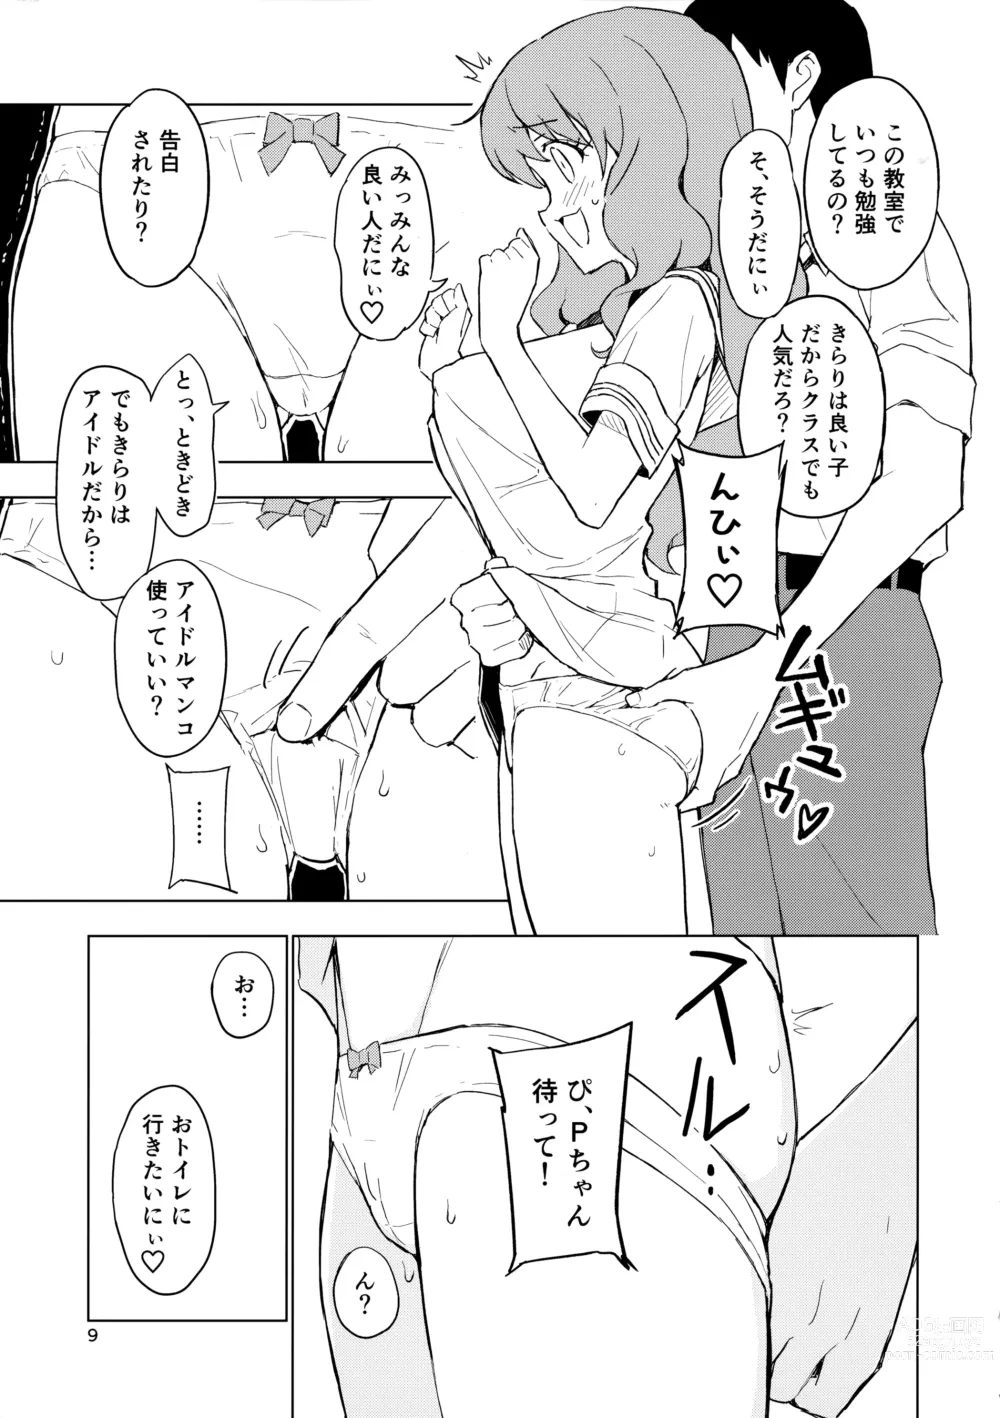 Page 8 of doujinshi AnKira Ura Satsueikai Cosplay Hametori 7-renkin!